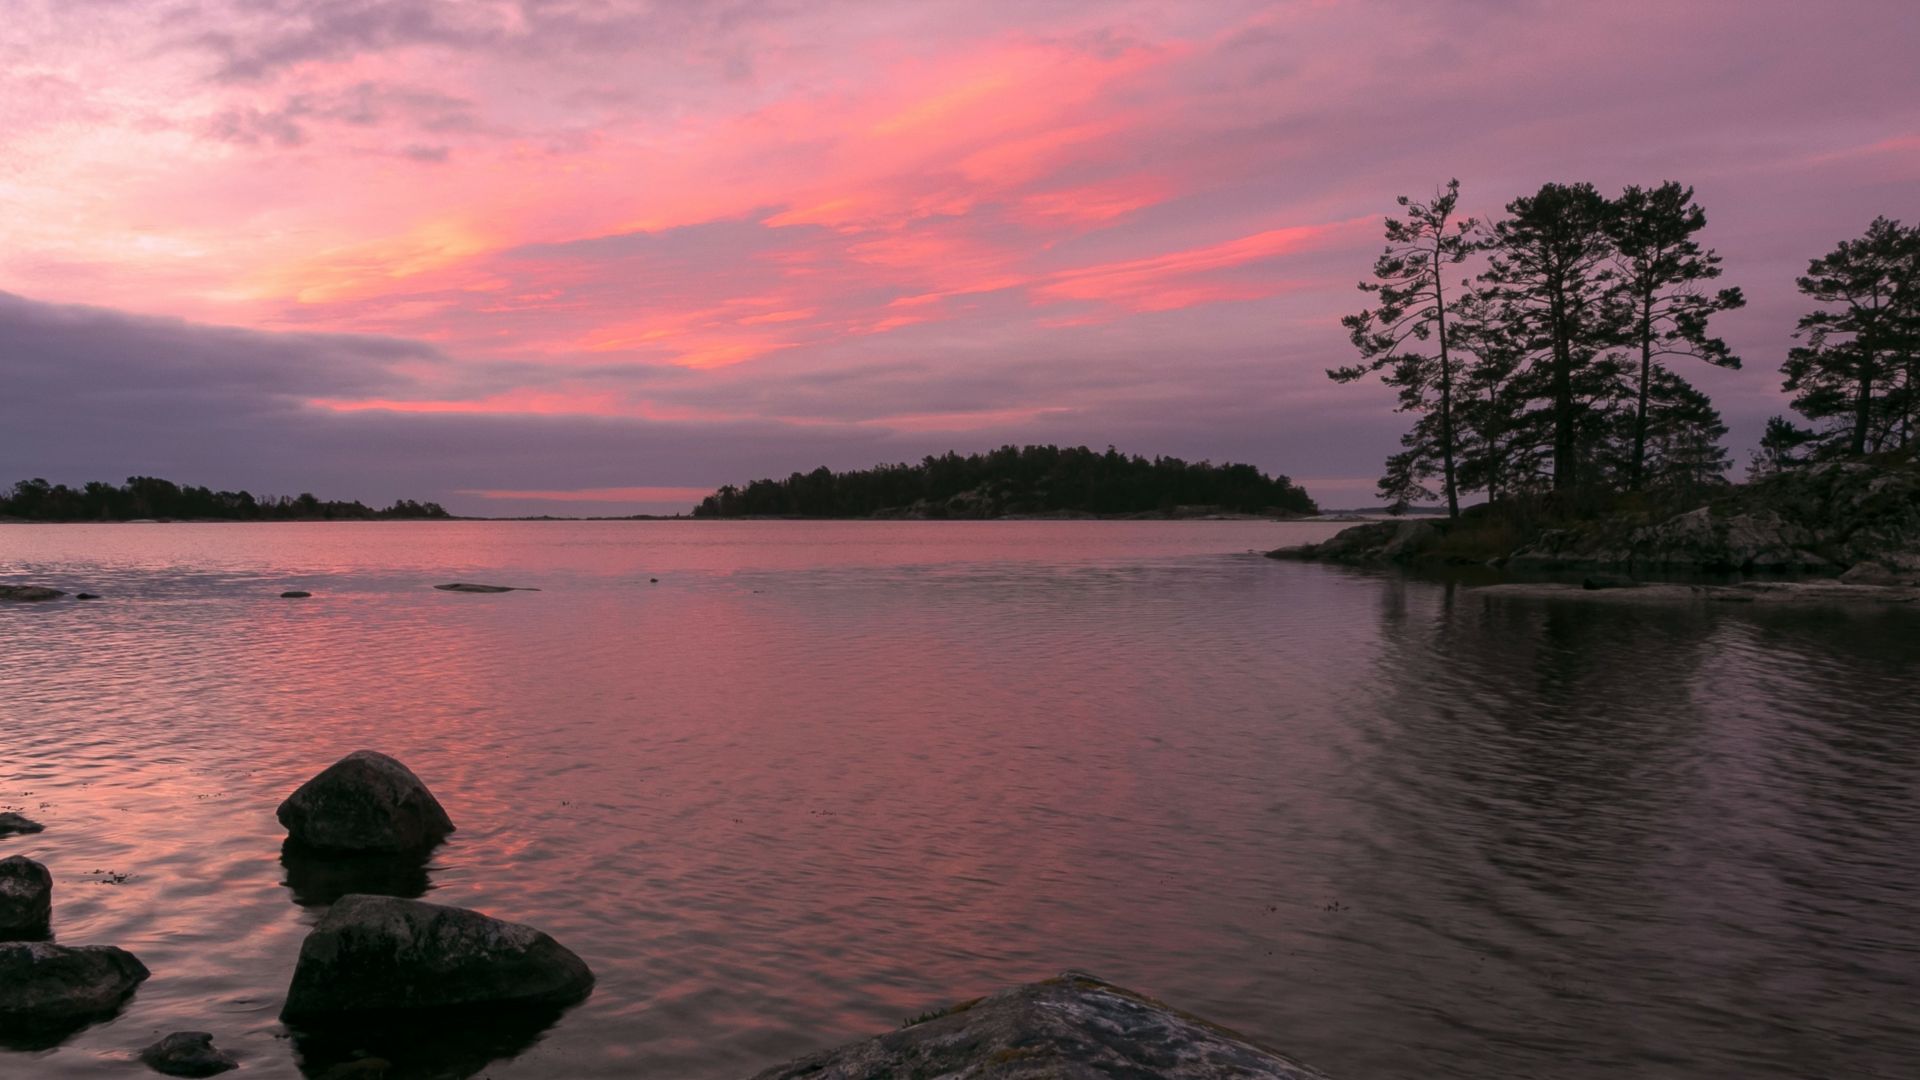 Vista de la costa rocosa de un lago en el archipiélago Vastervik con islas cubiertas de árboles bajo una puesta de sol rosa